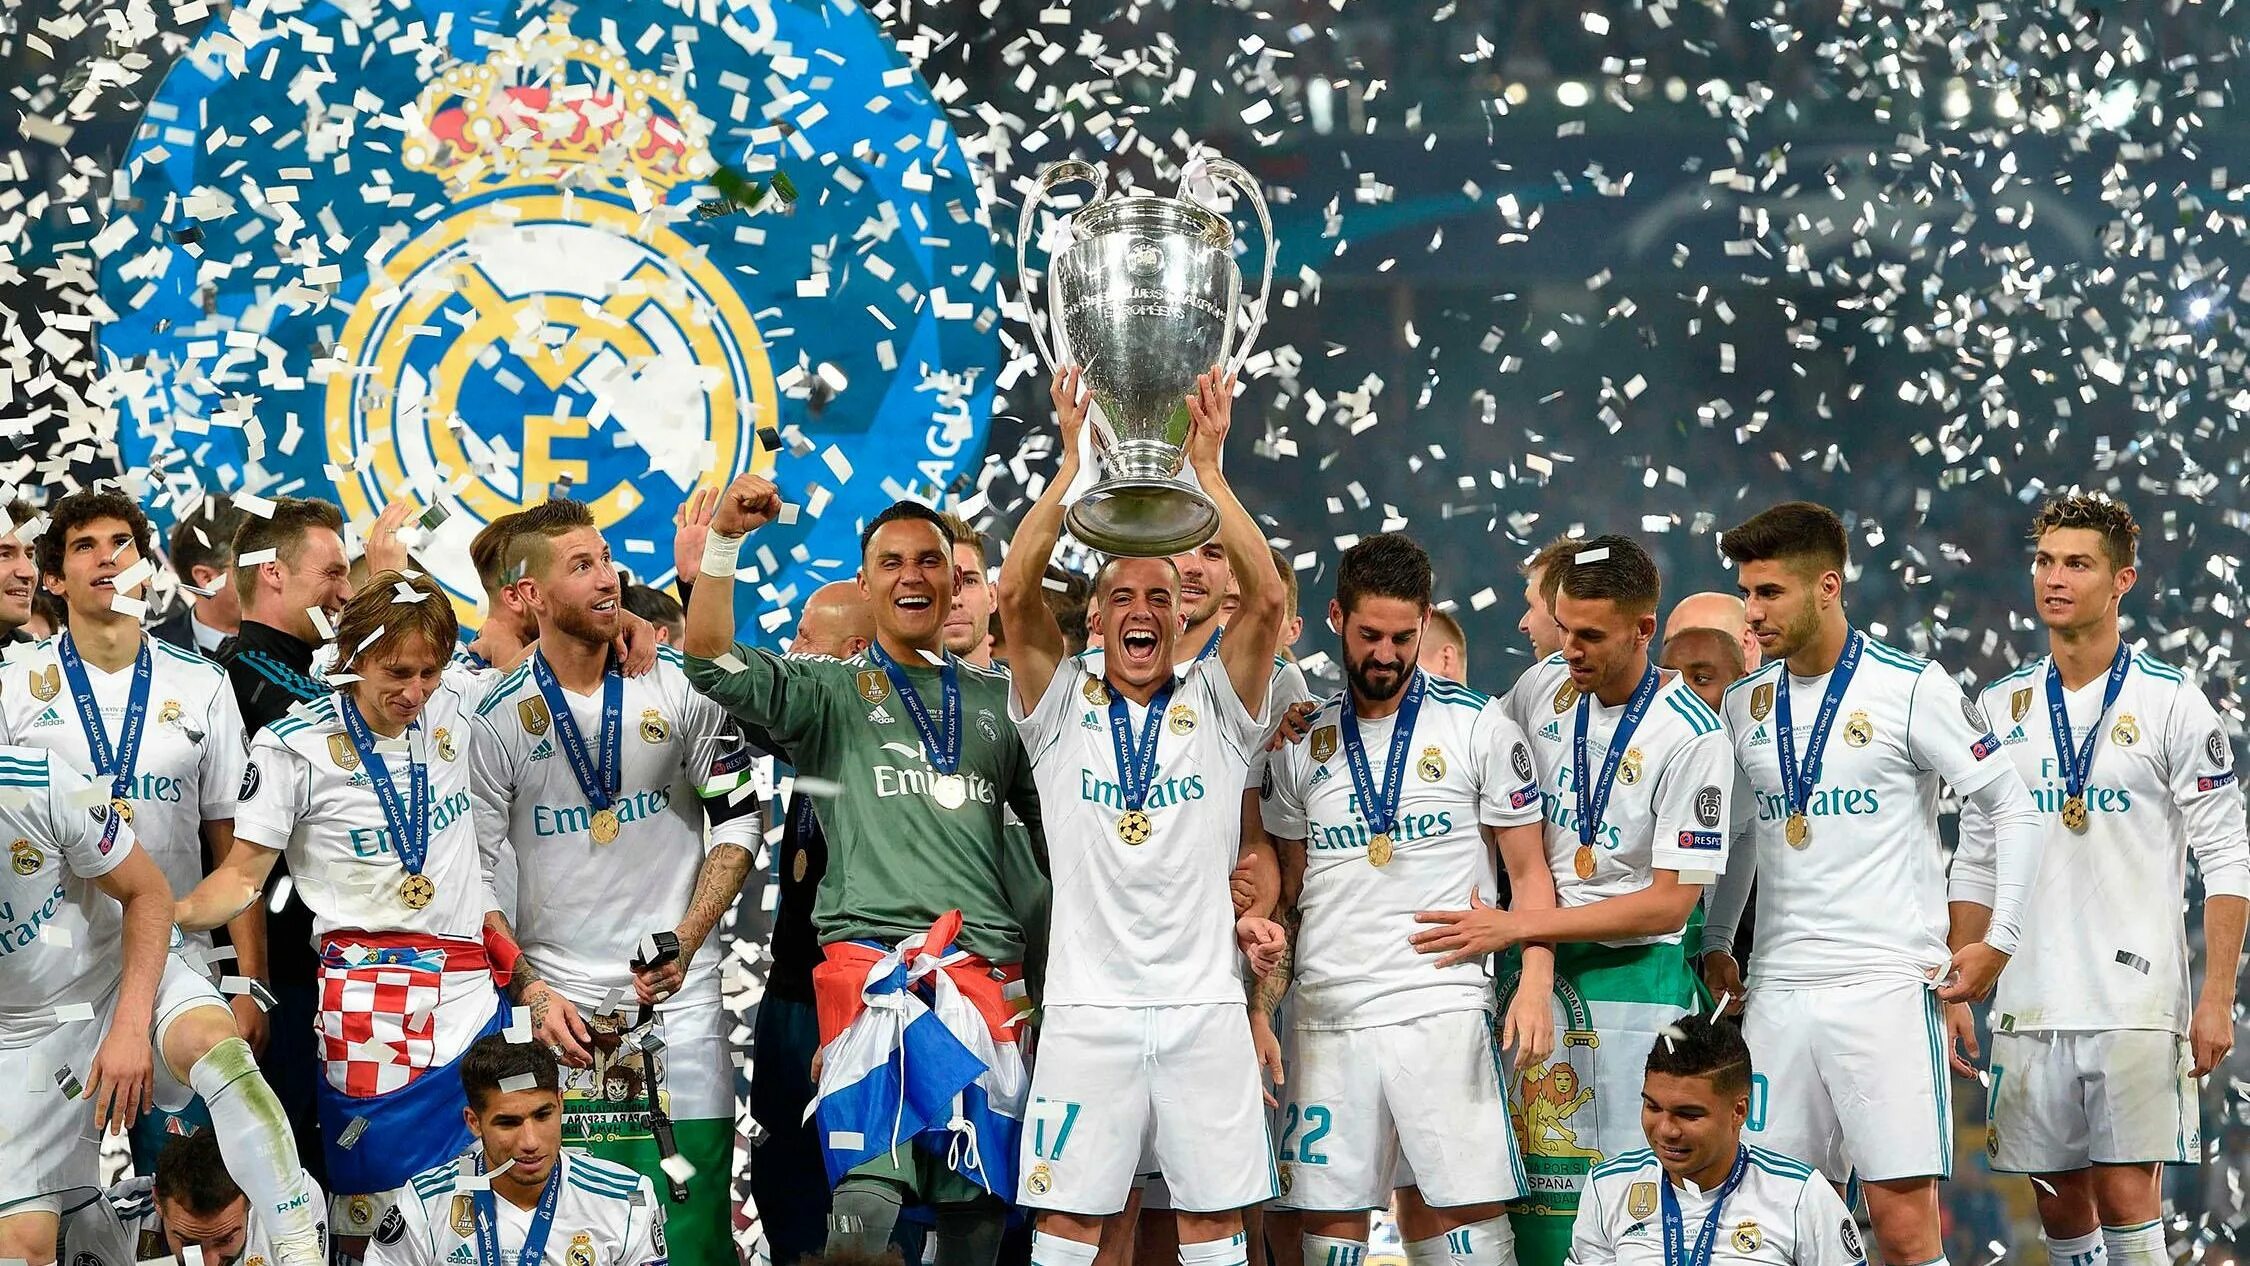 Реал Мадрид UCL. Zidane real Madrid Champions League Final. UEFA Champions League real Madrid. Real Madrid Champions League Final 2018. Real madrid champions